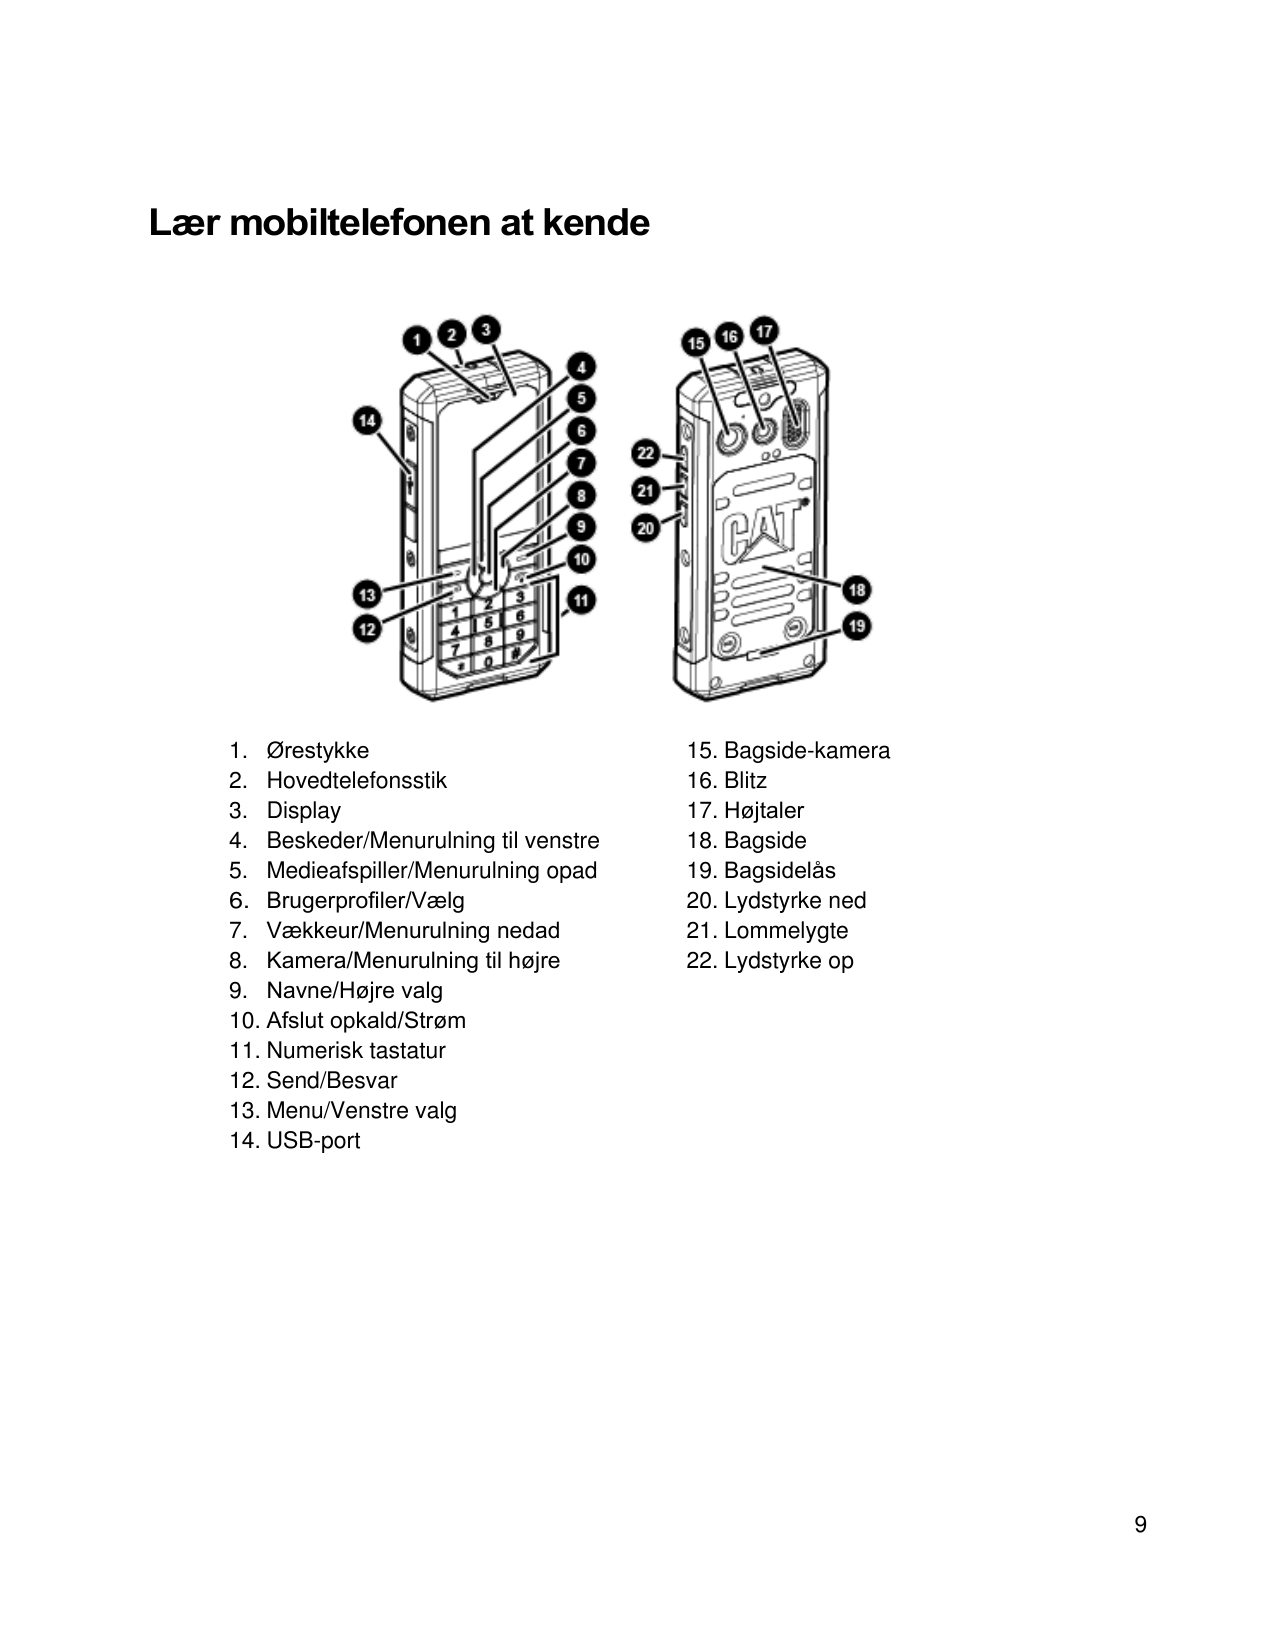 Lær mobiltelefonen at kende1. ØrestykkeØrestykke2.Hovedtelefonsstik3. Display4. Beskeder/Menurulning til venstre5. Medieafspille